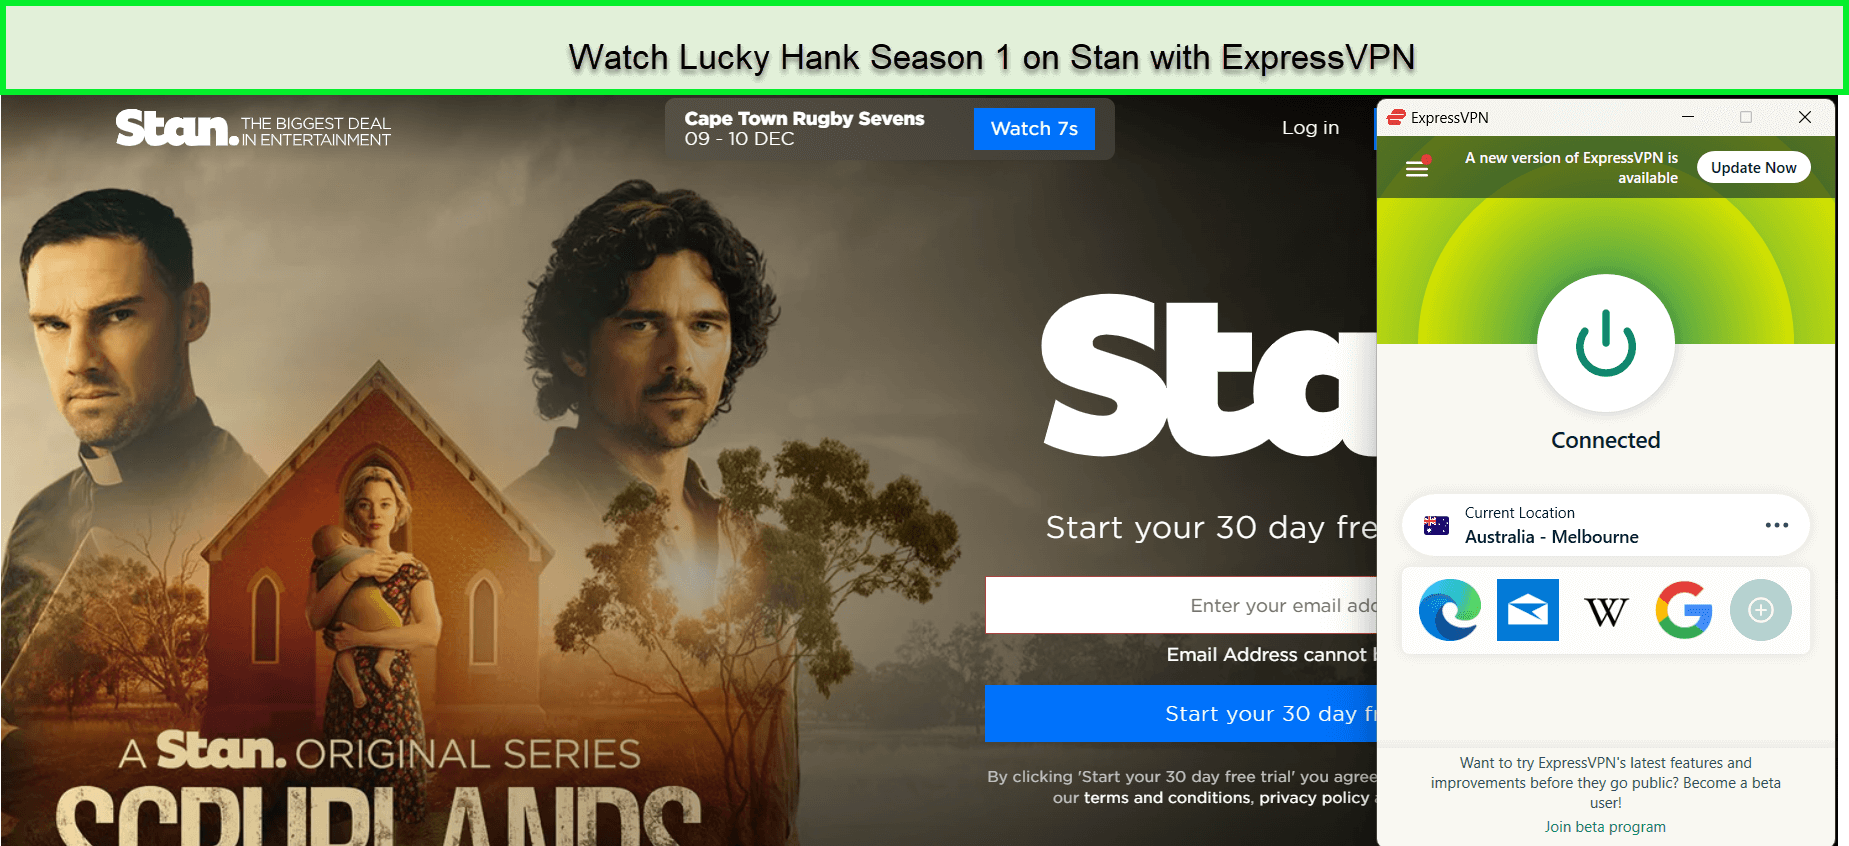 Watch-Lucky-Hank-Season-1-in-New Zealand-on-Stan